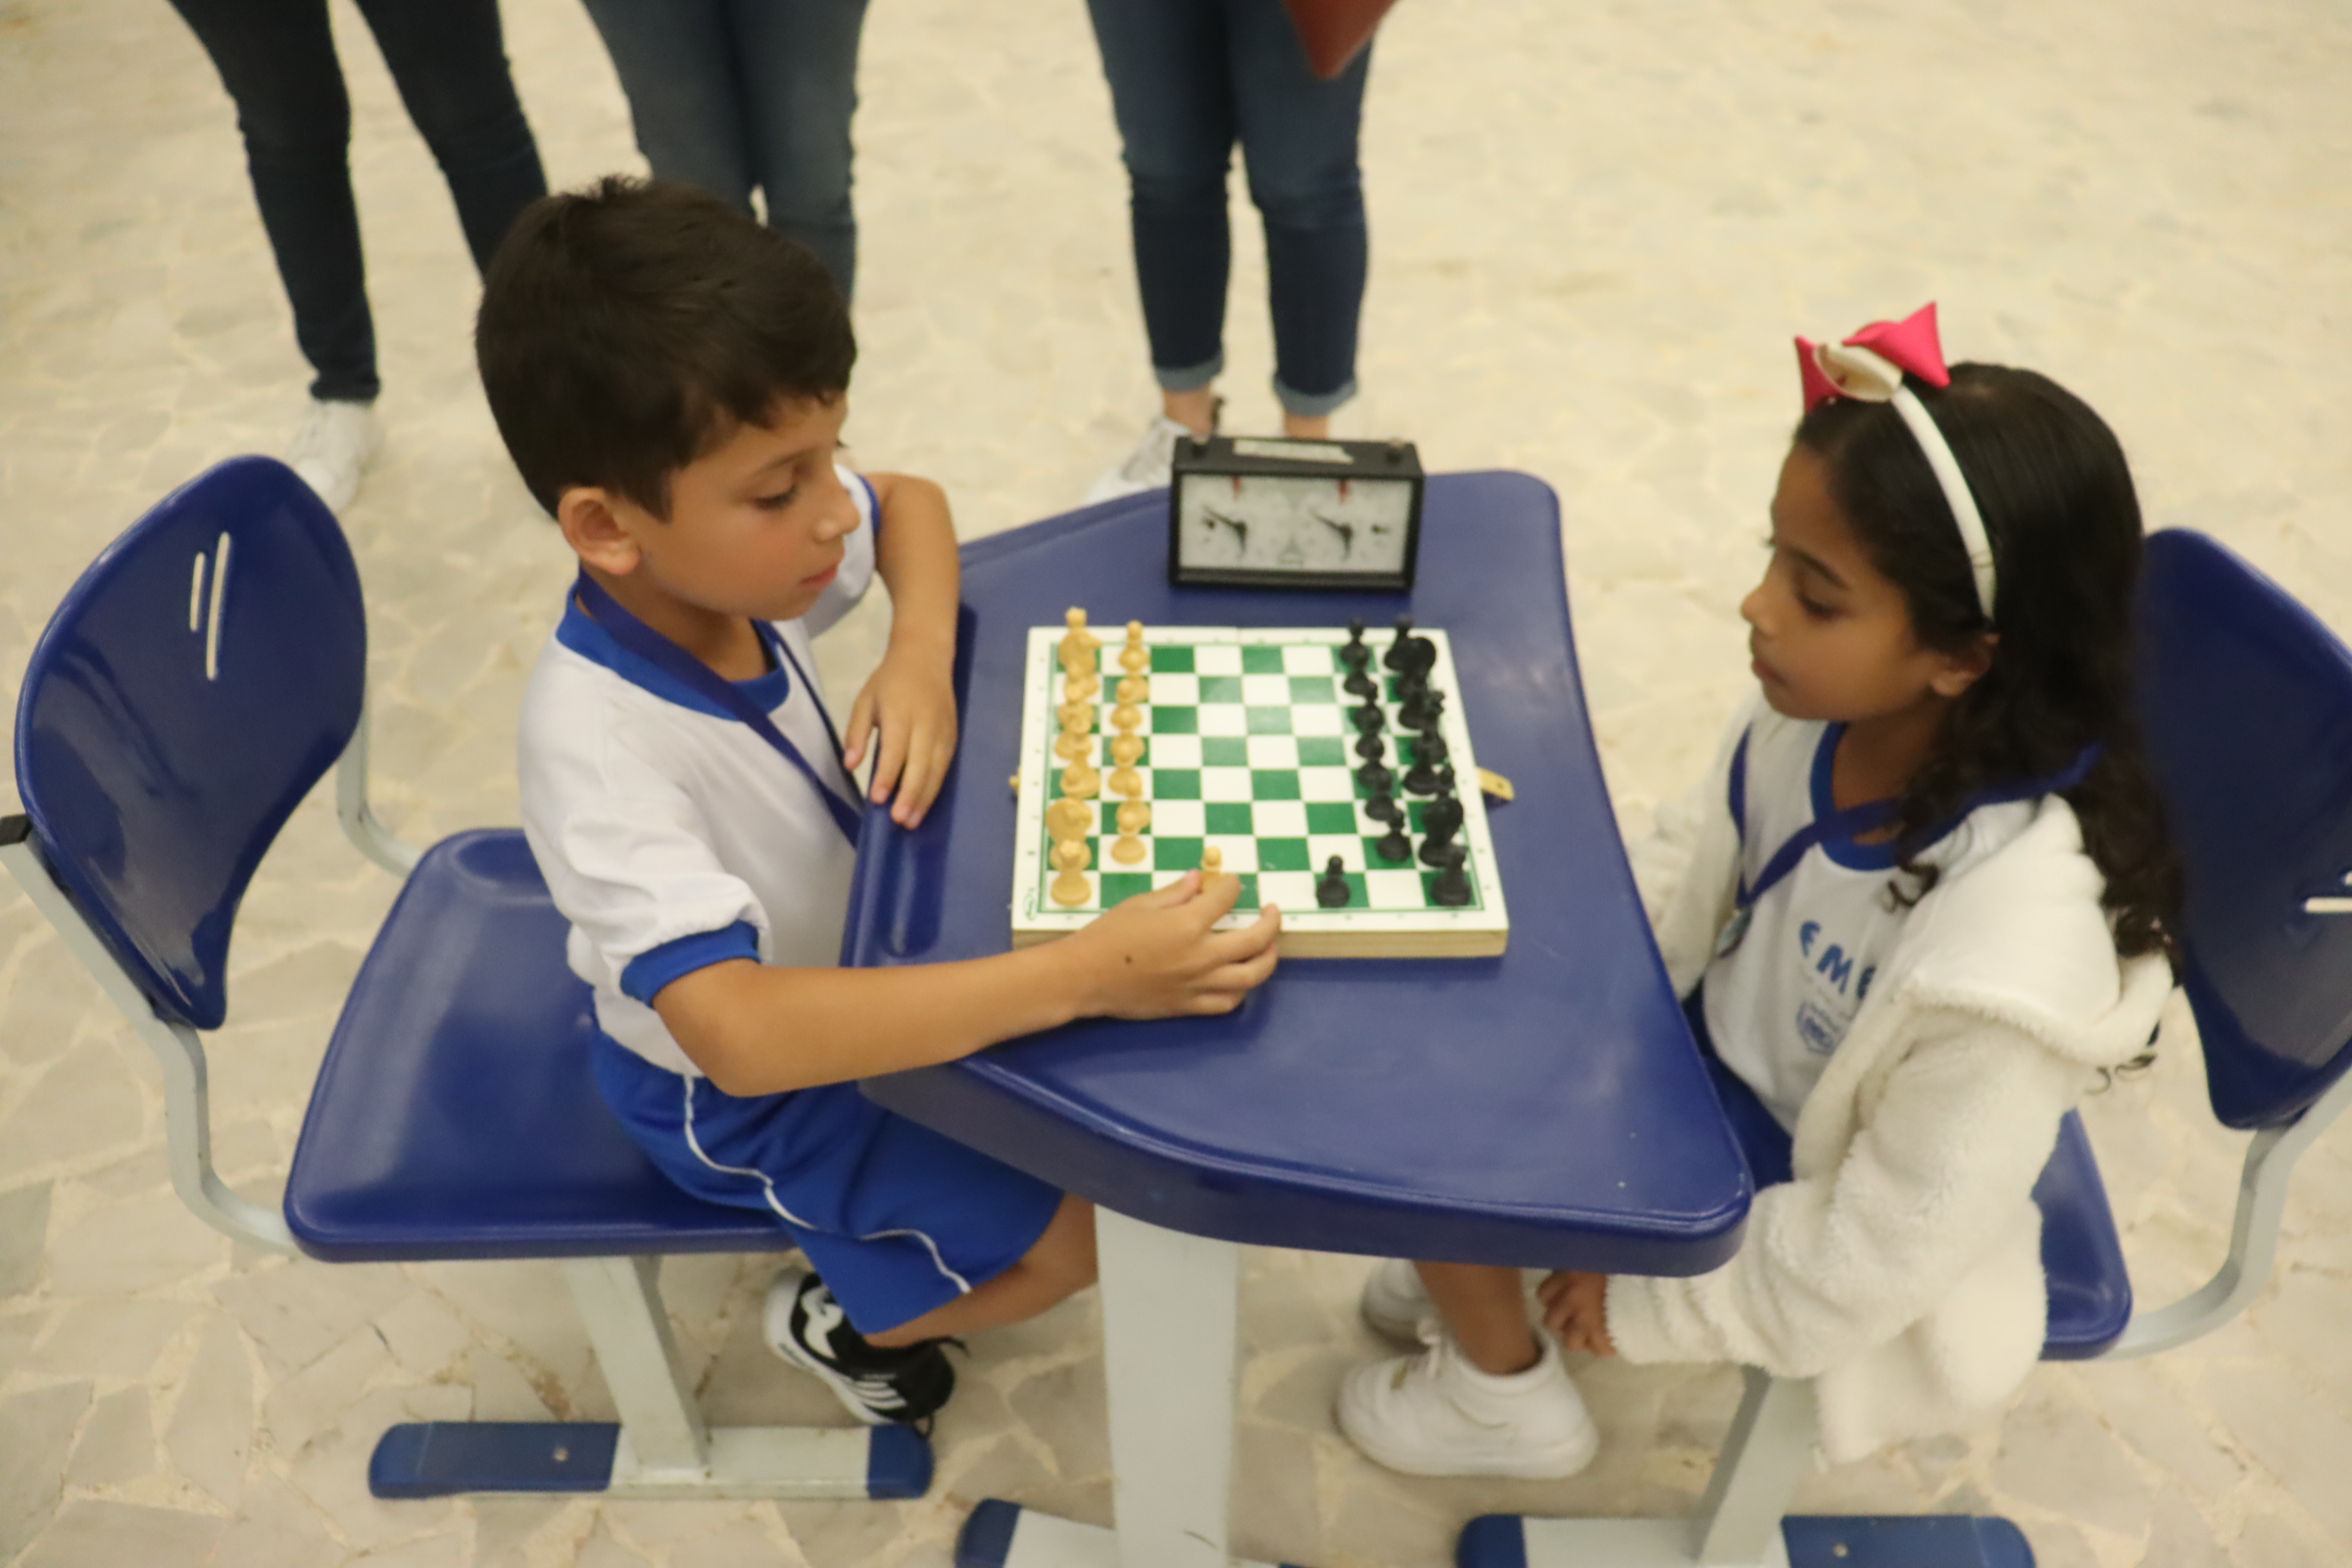 Aluno do CET finaliza competição de xadrez na 11ª posição - CET